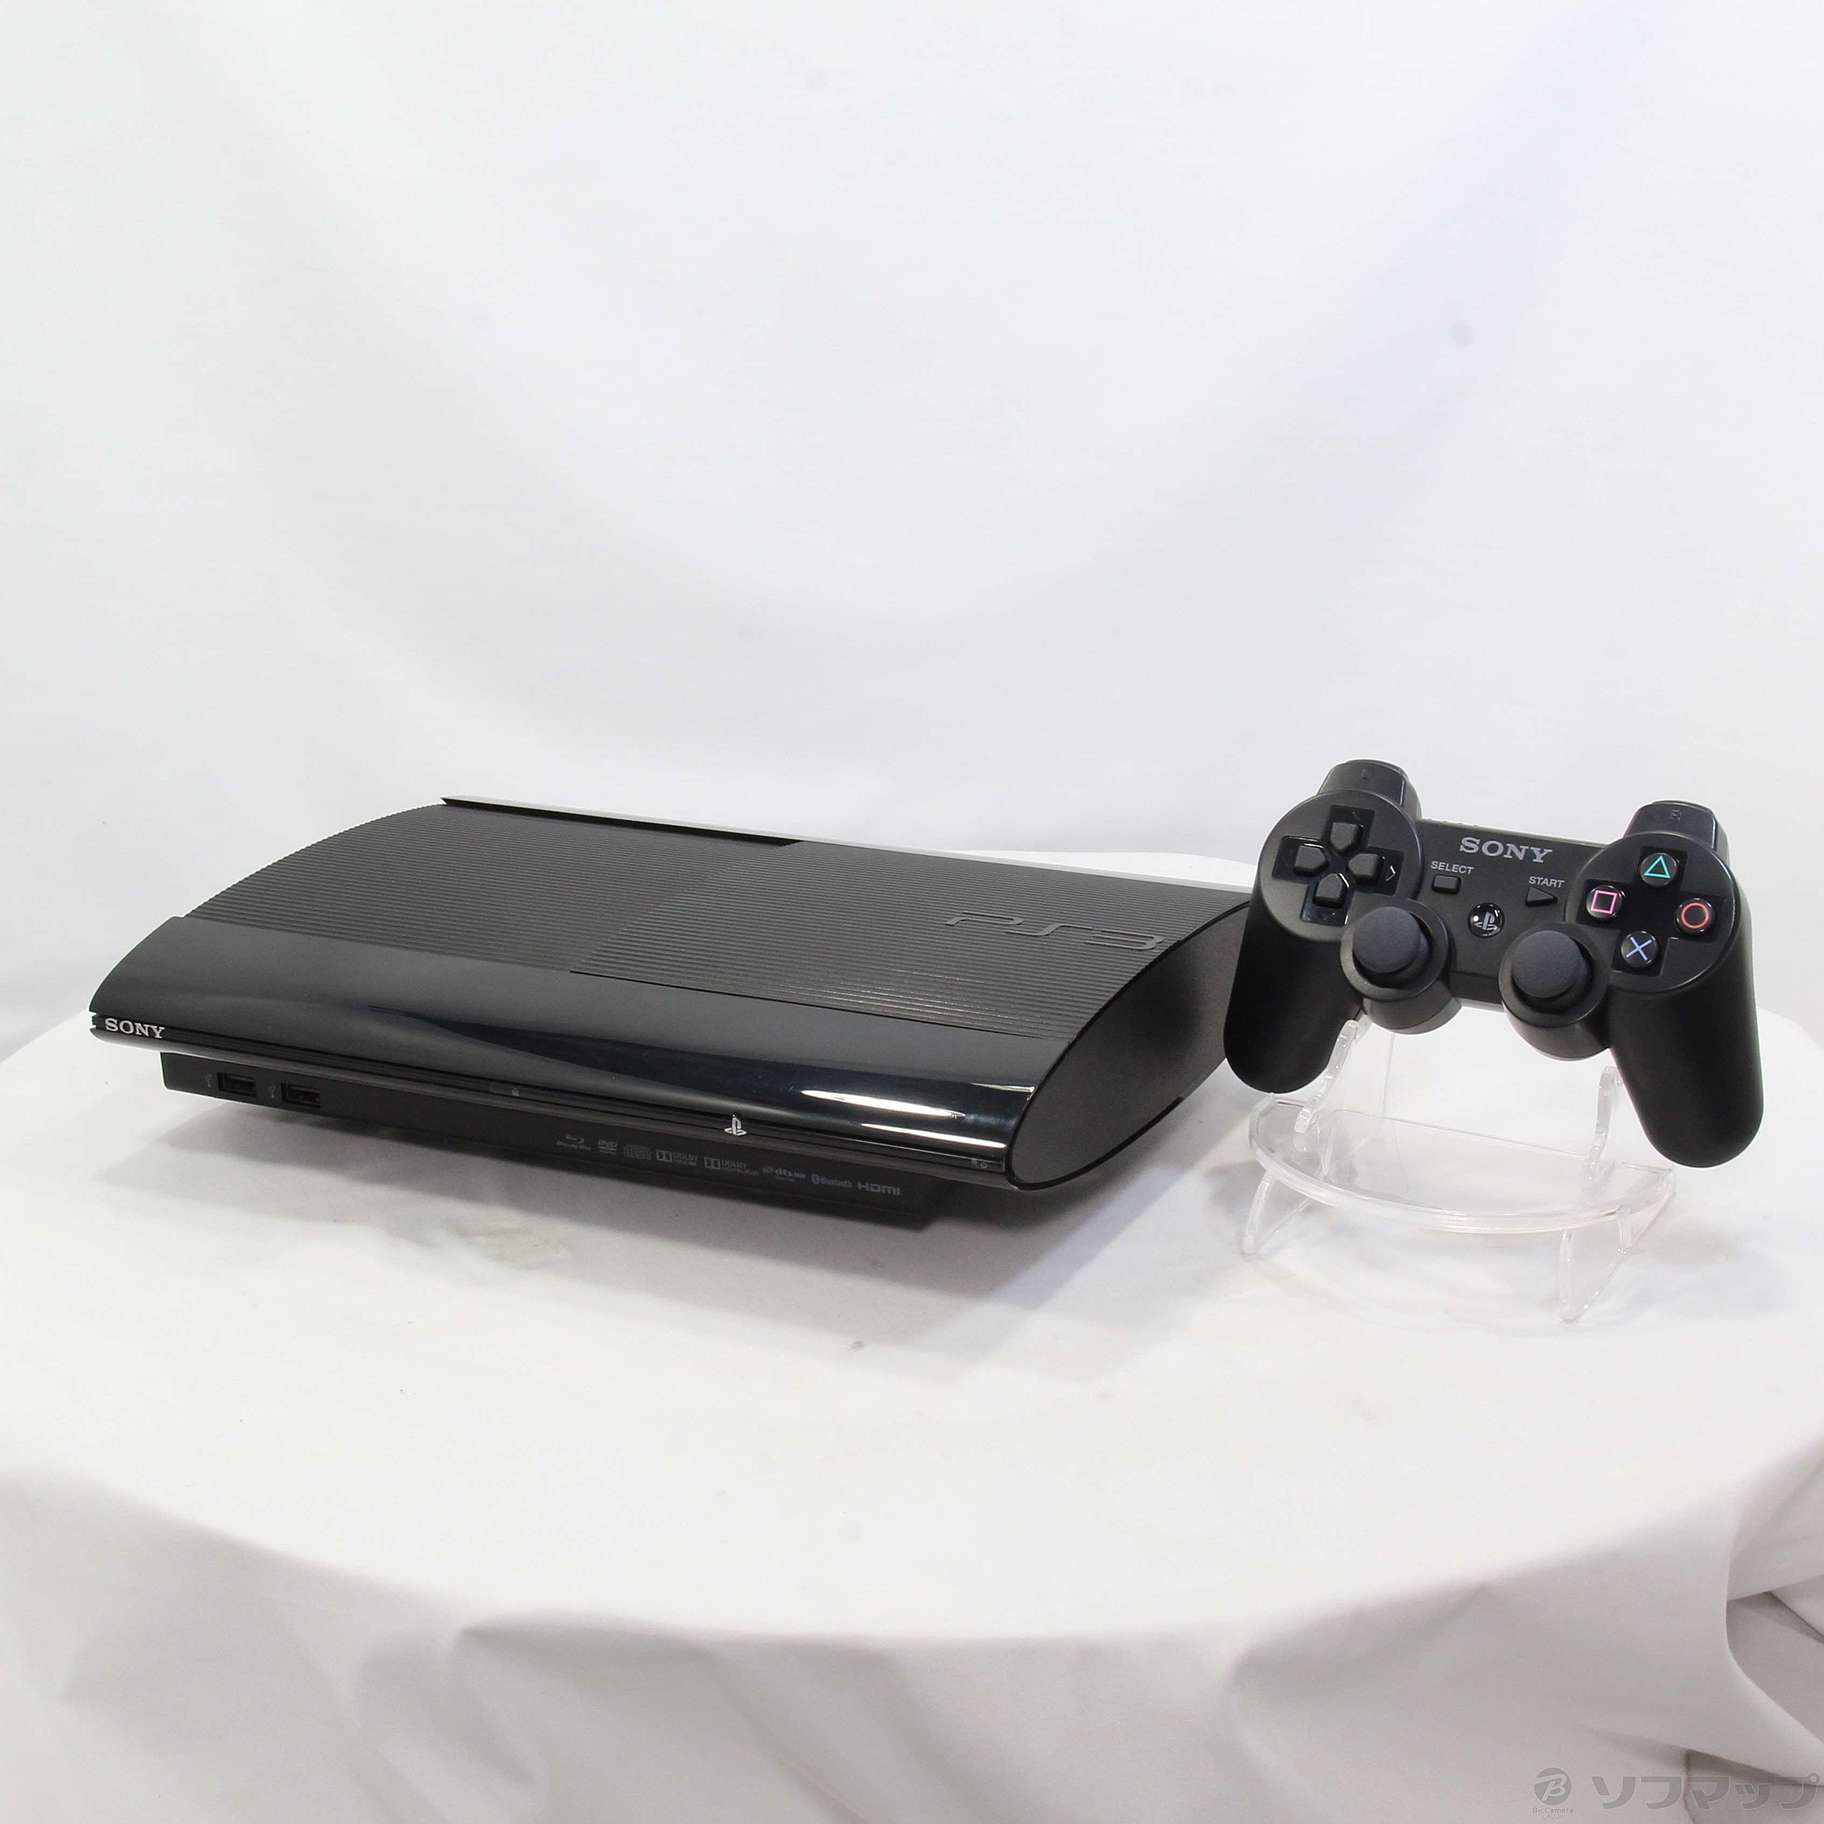 SONY／PlayStation3 CECH4300C